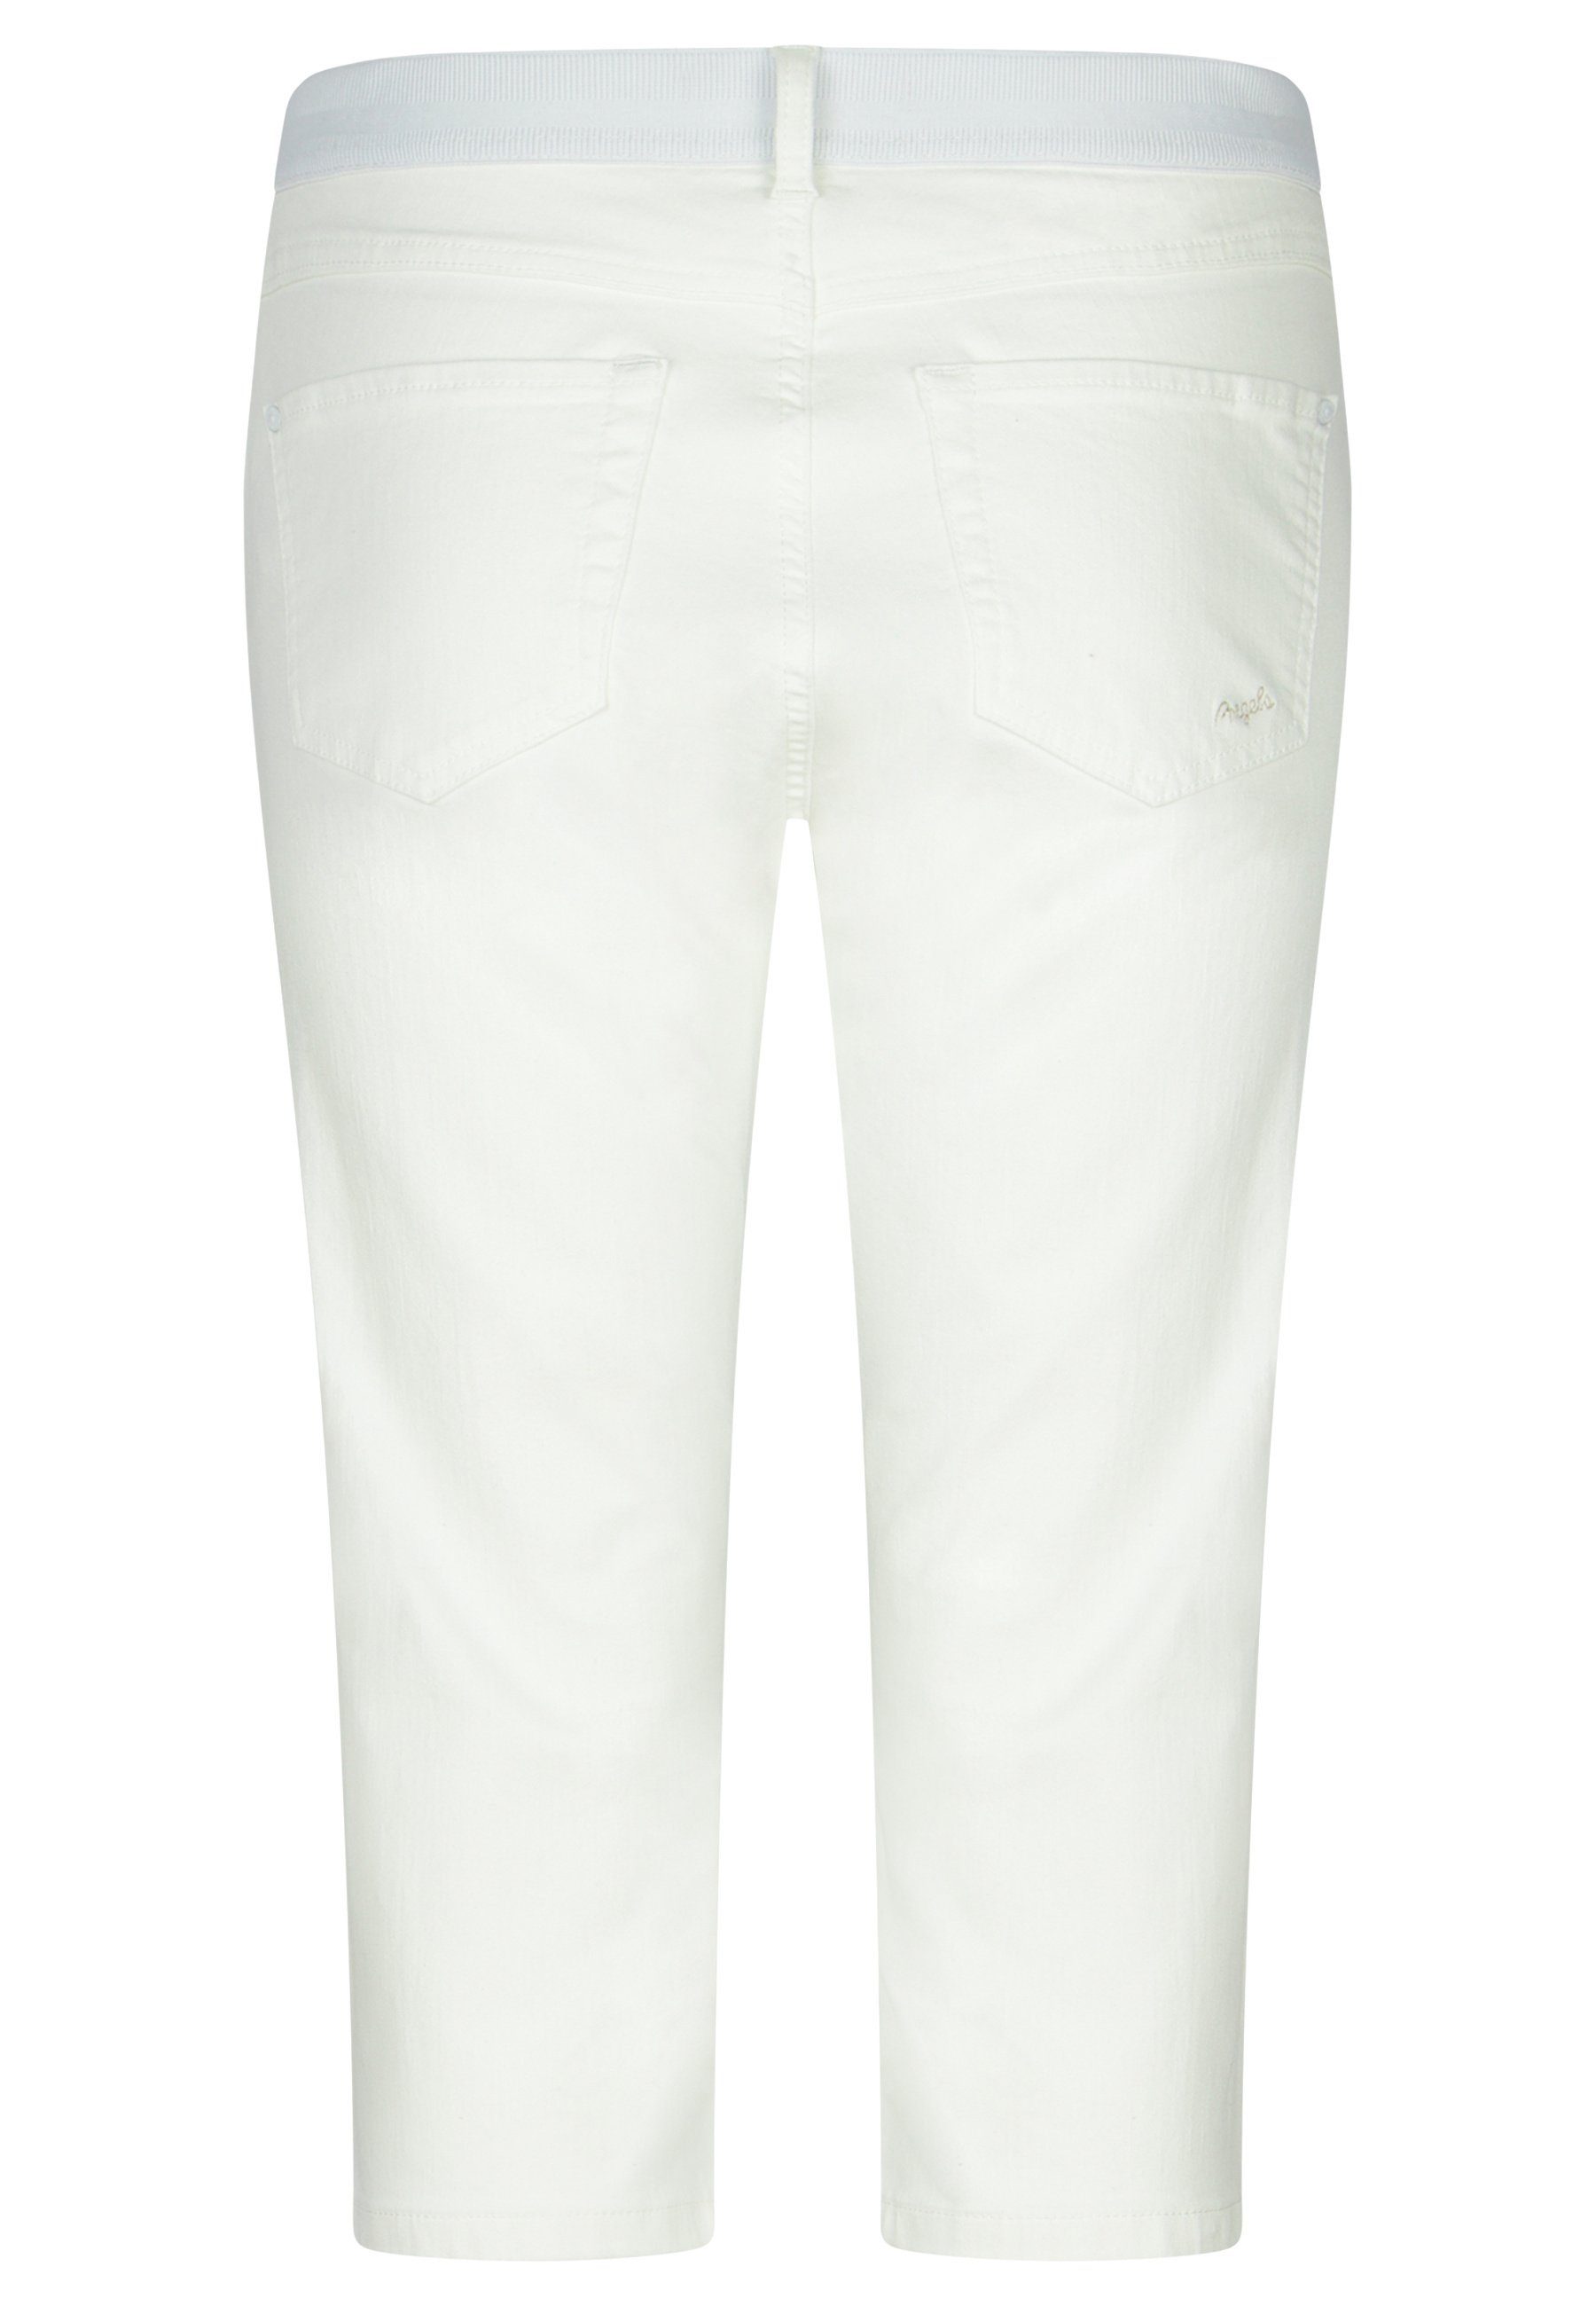 ANGELS Dehnbund-Jeans Kurze Jeans Onesize mit klassischem Design weiß Capri